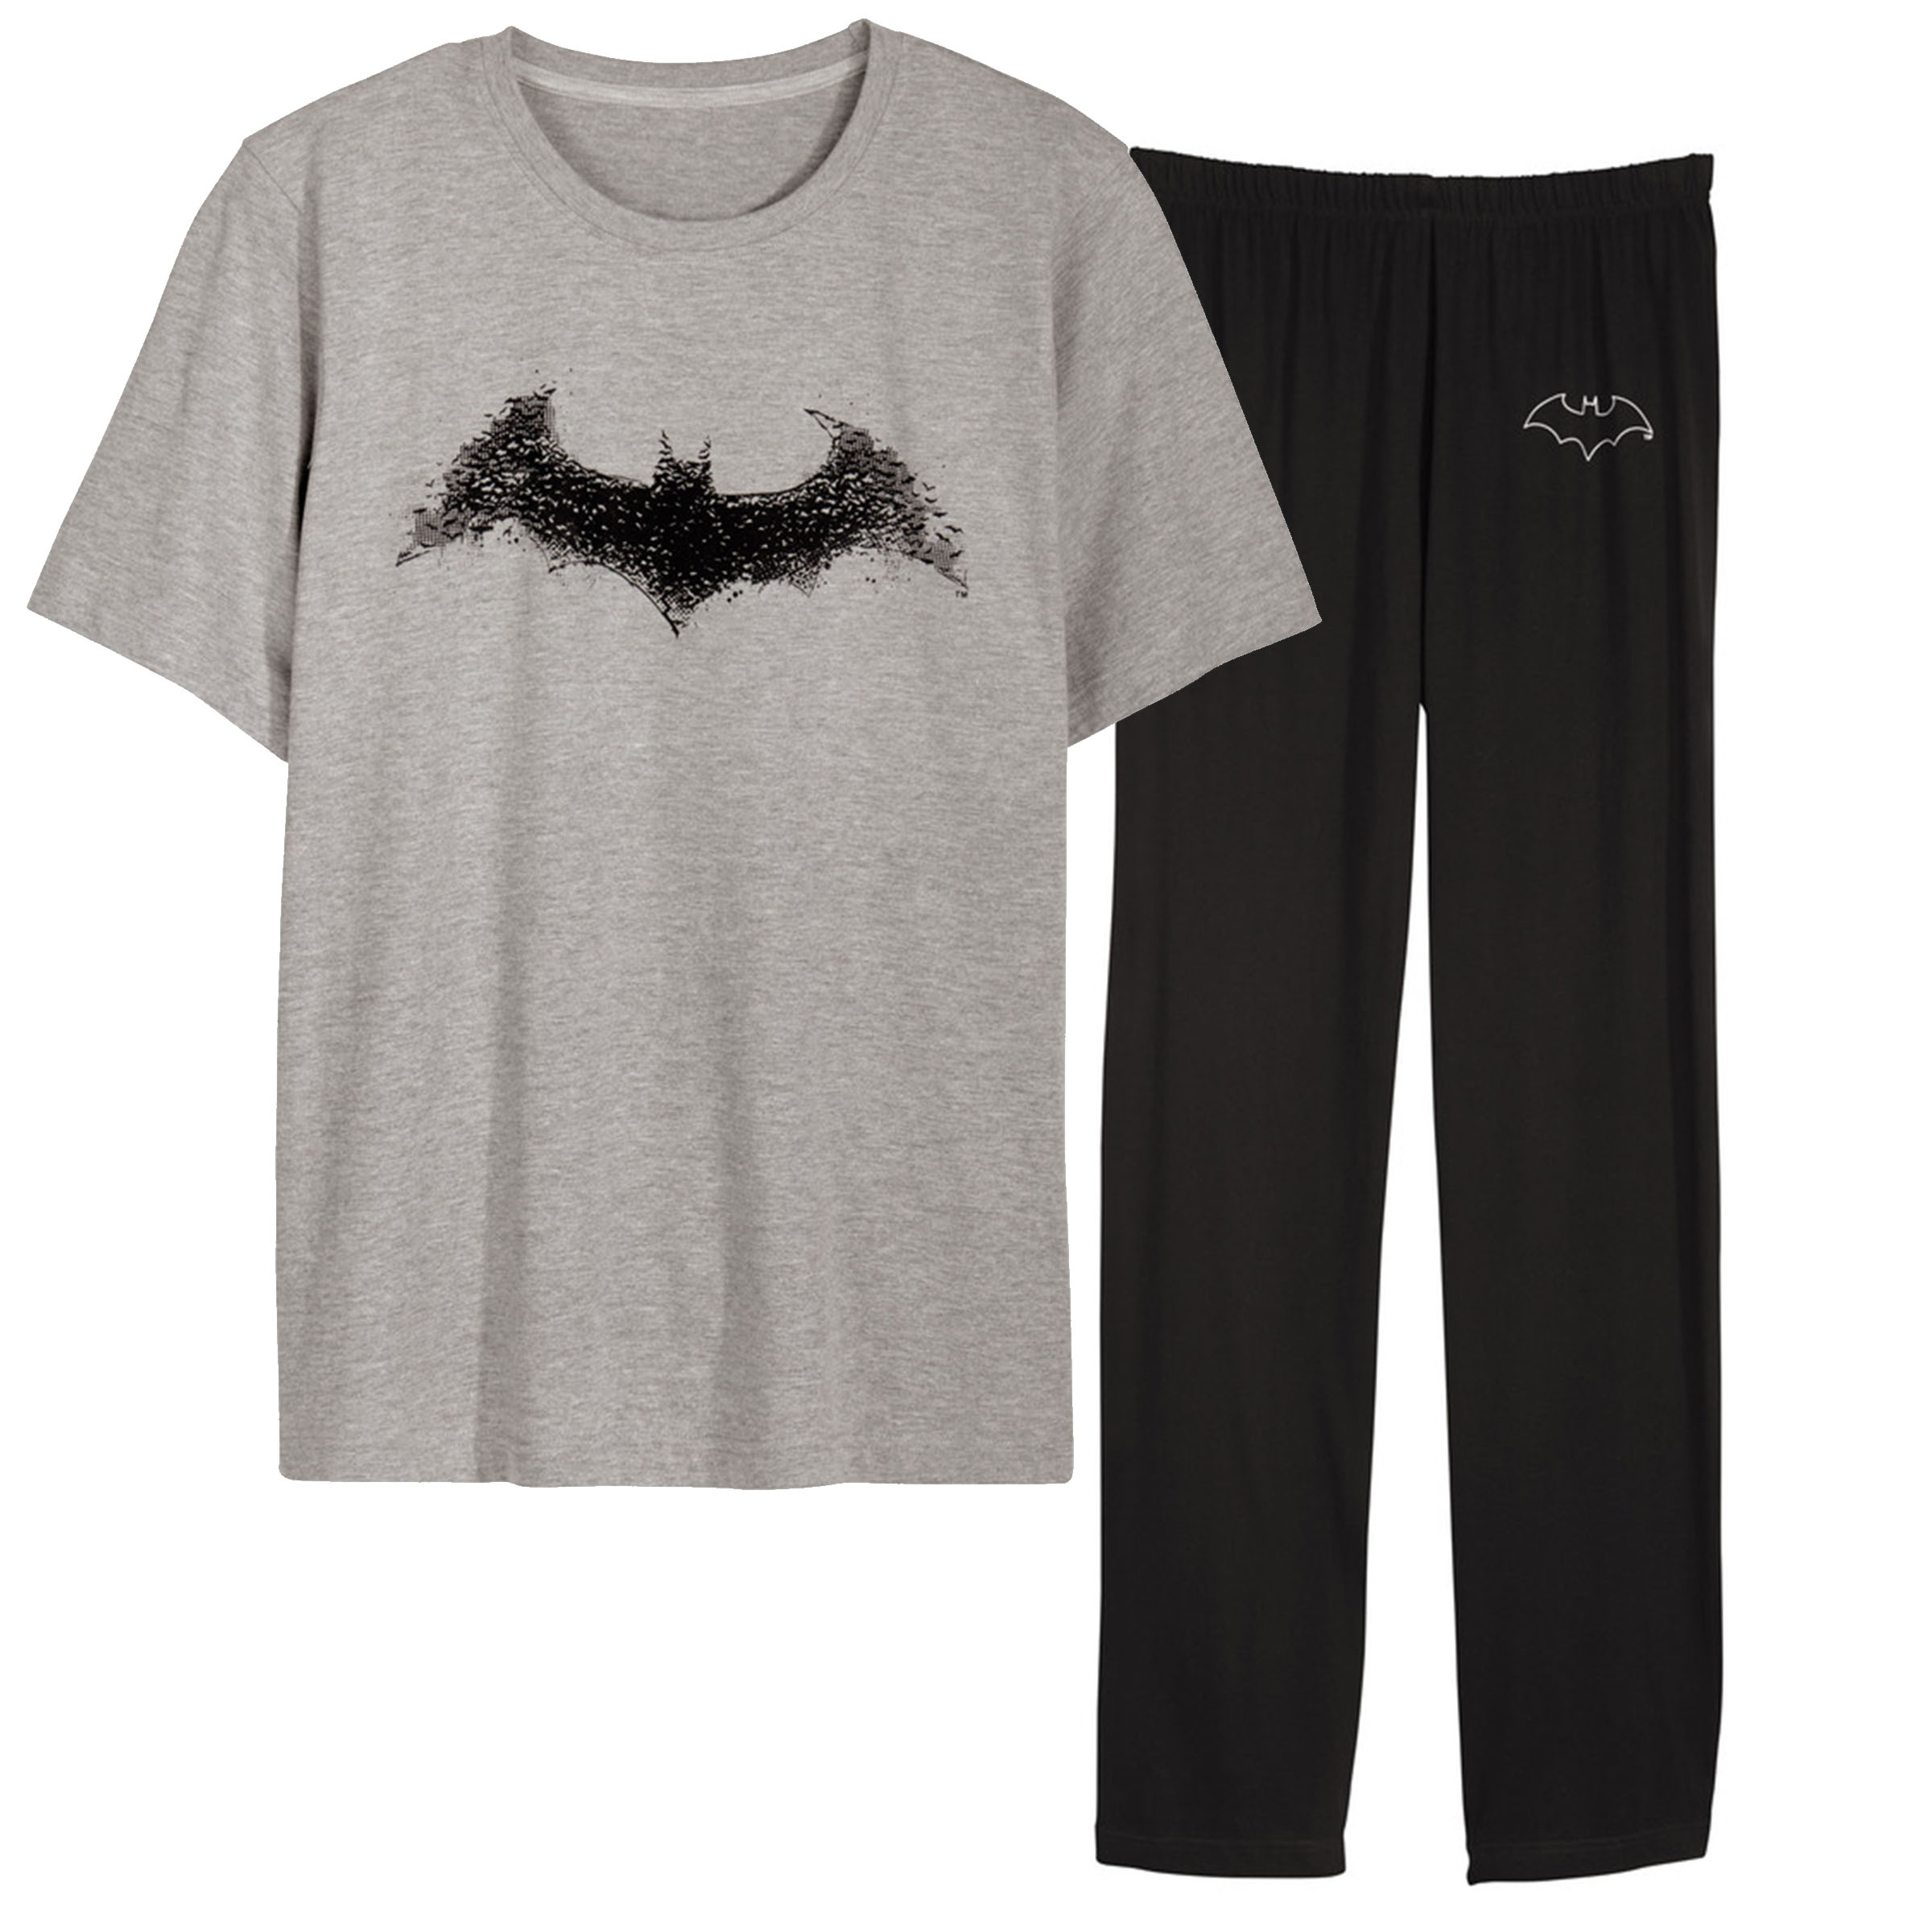 ست تی شرت و شلوار مردانه مدل BATMAN رنگ طوسی